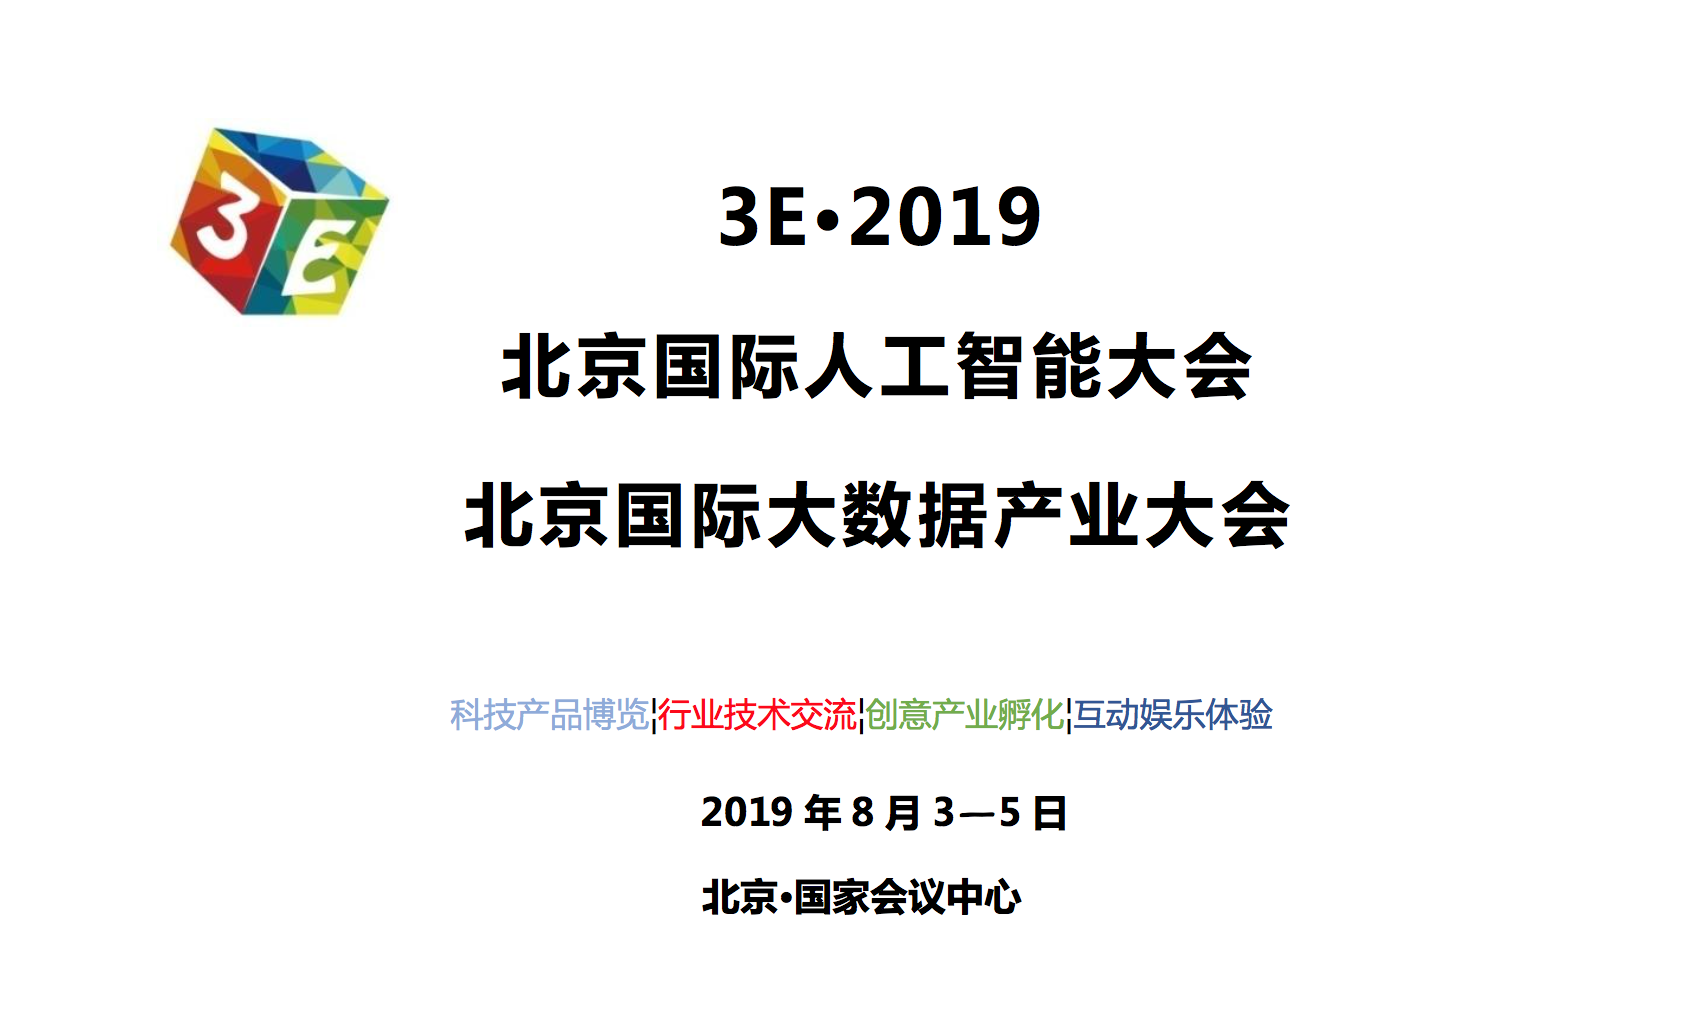 3E 2019北京国际人工智能大数据大会8月3-5日北京国家会议中心